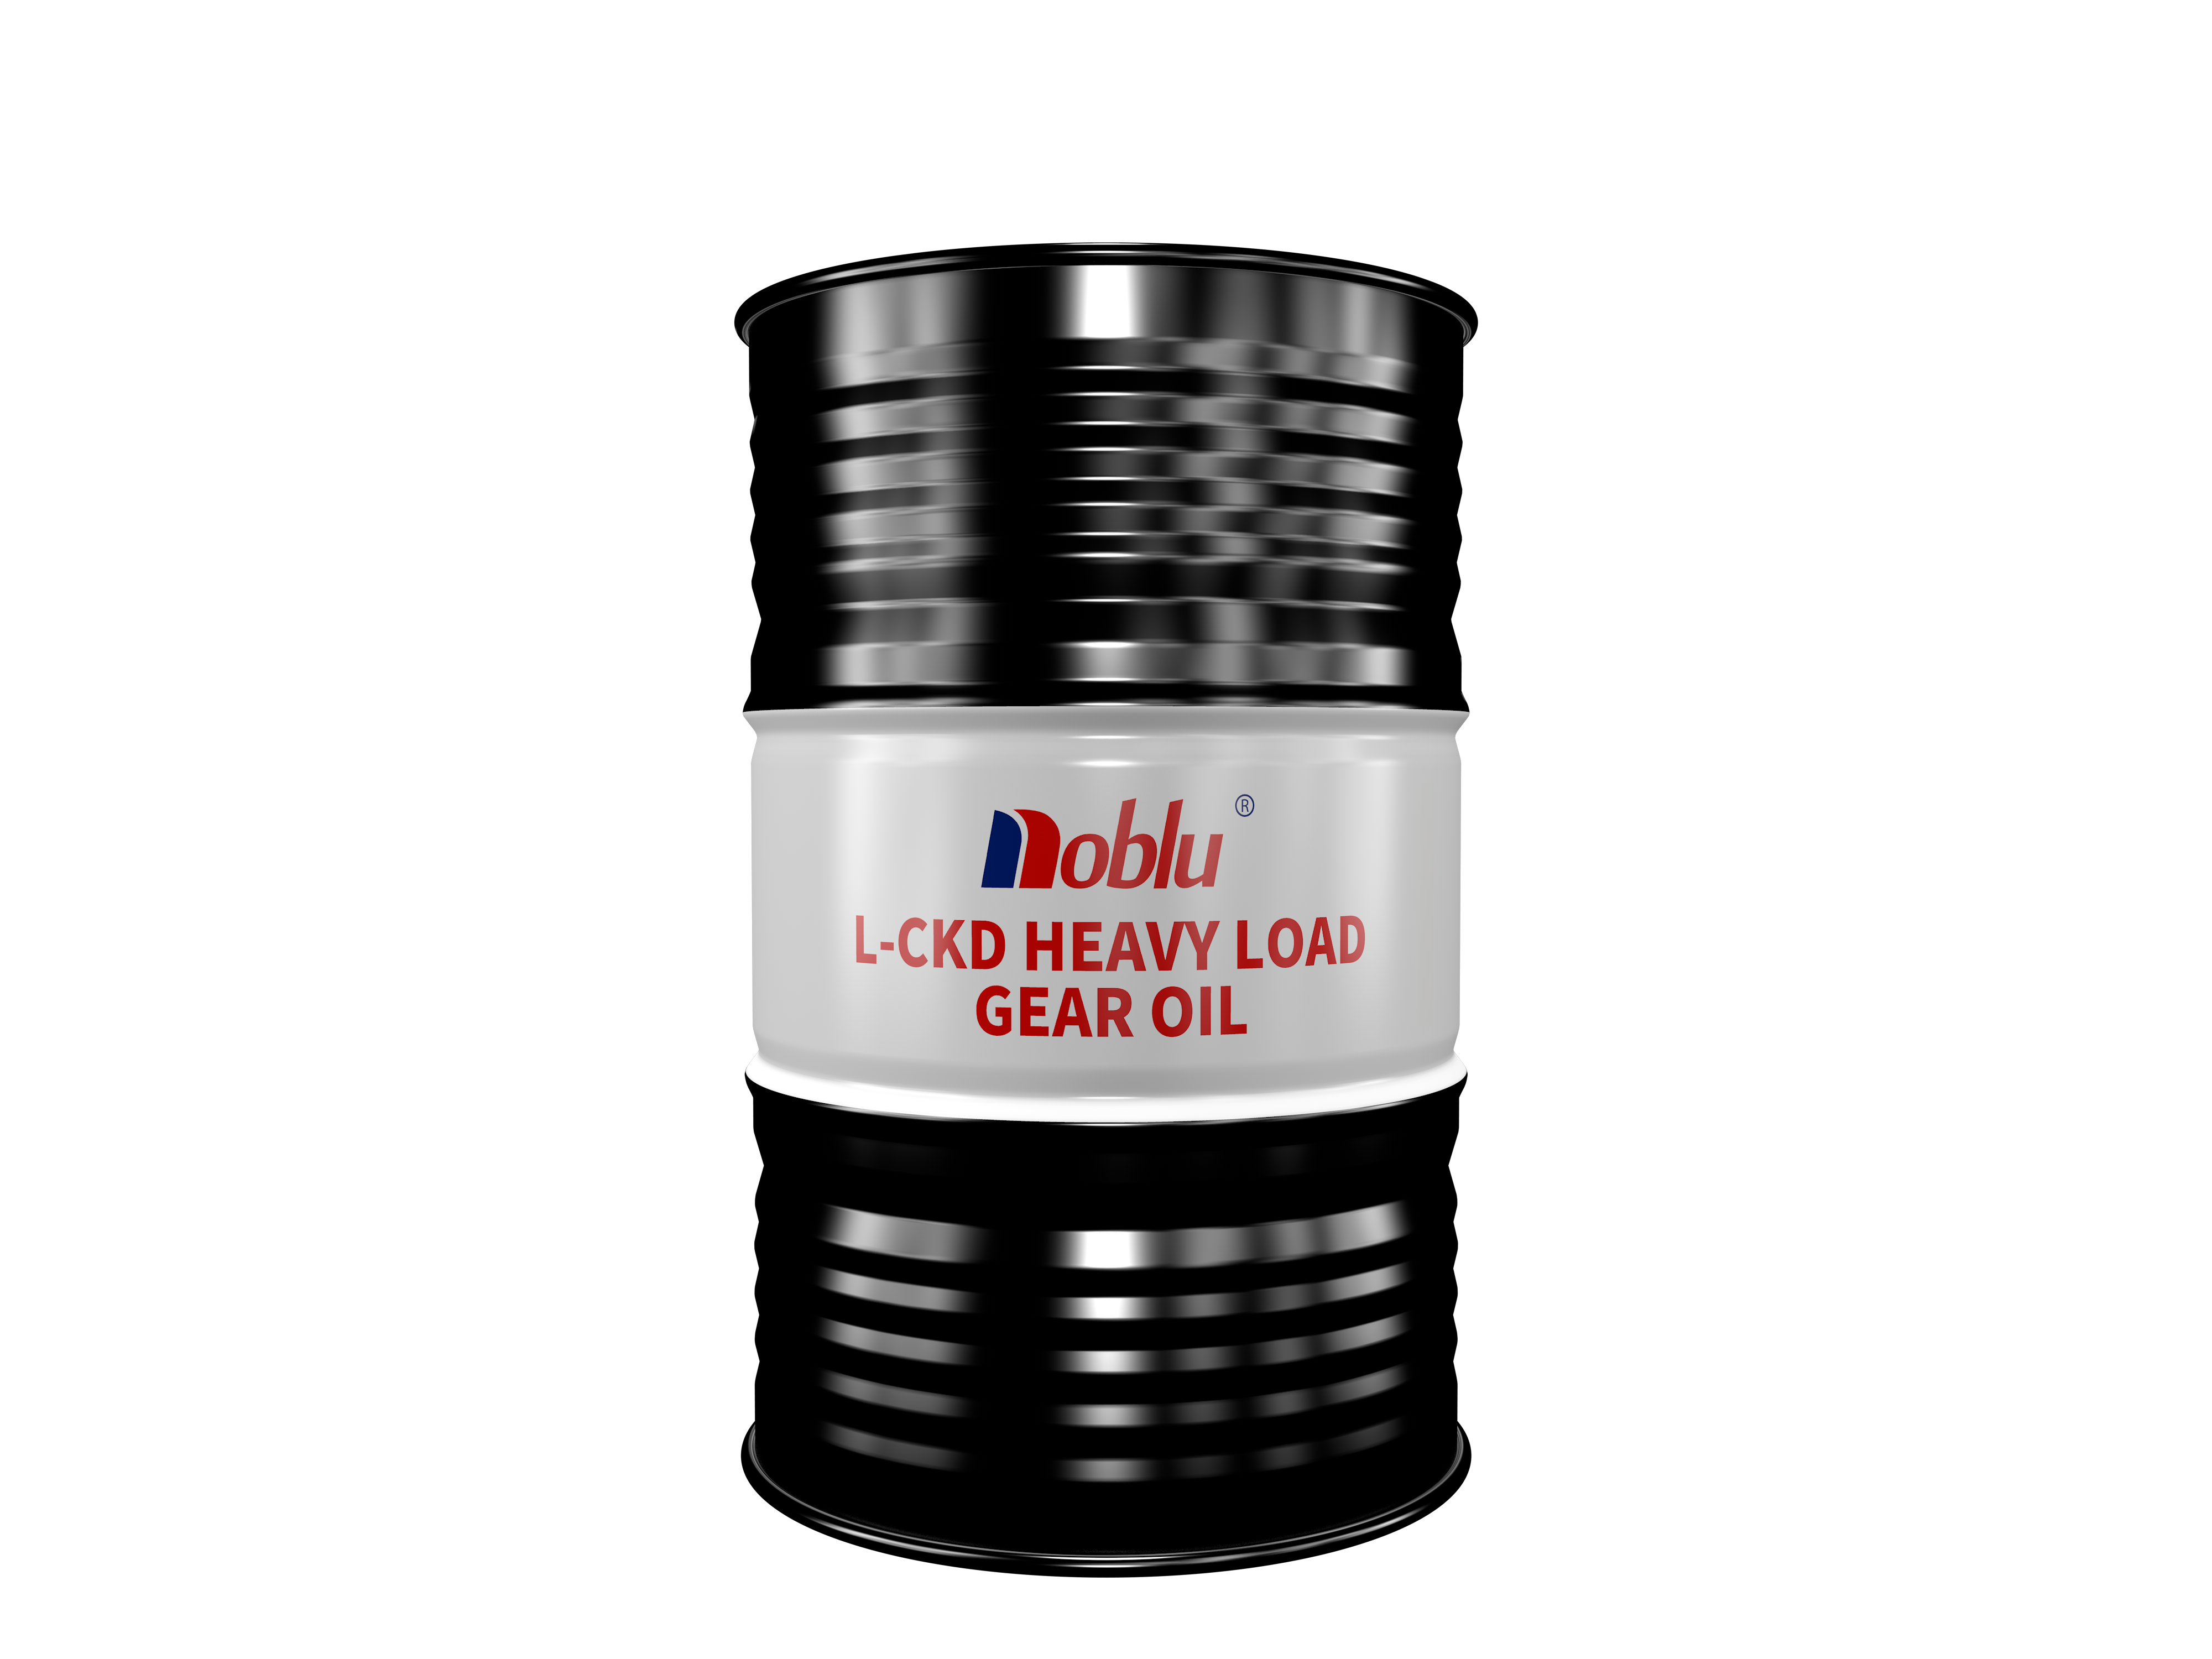 L-CKD heavy load gear oil